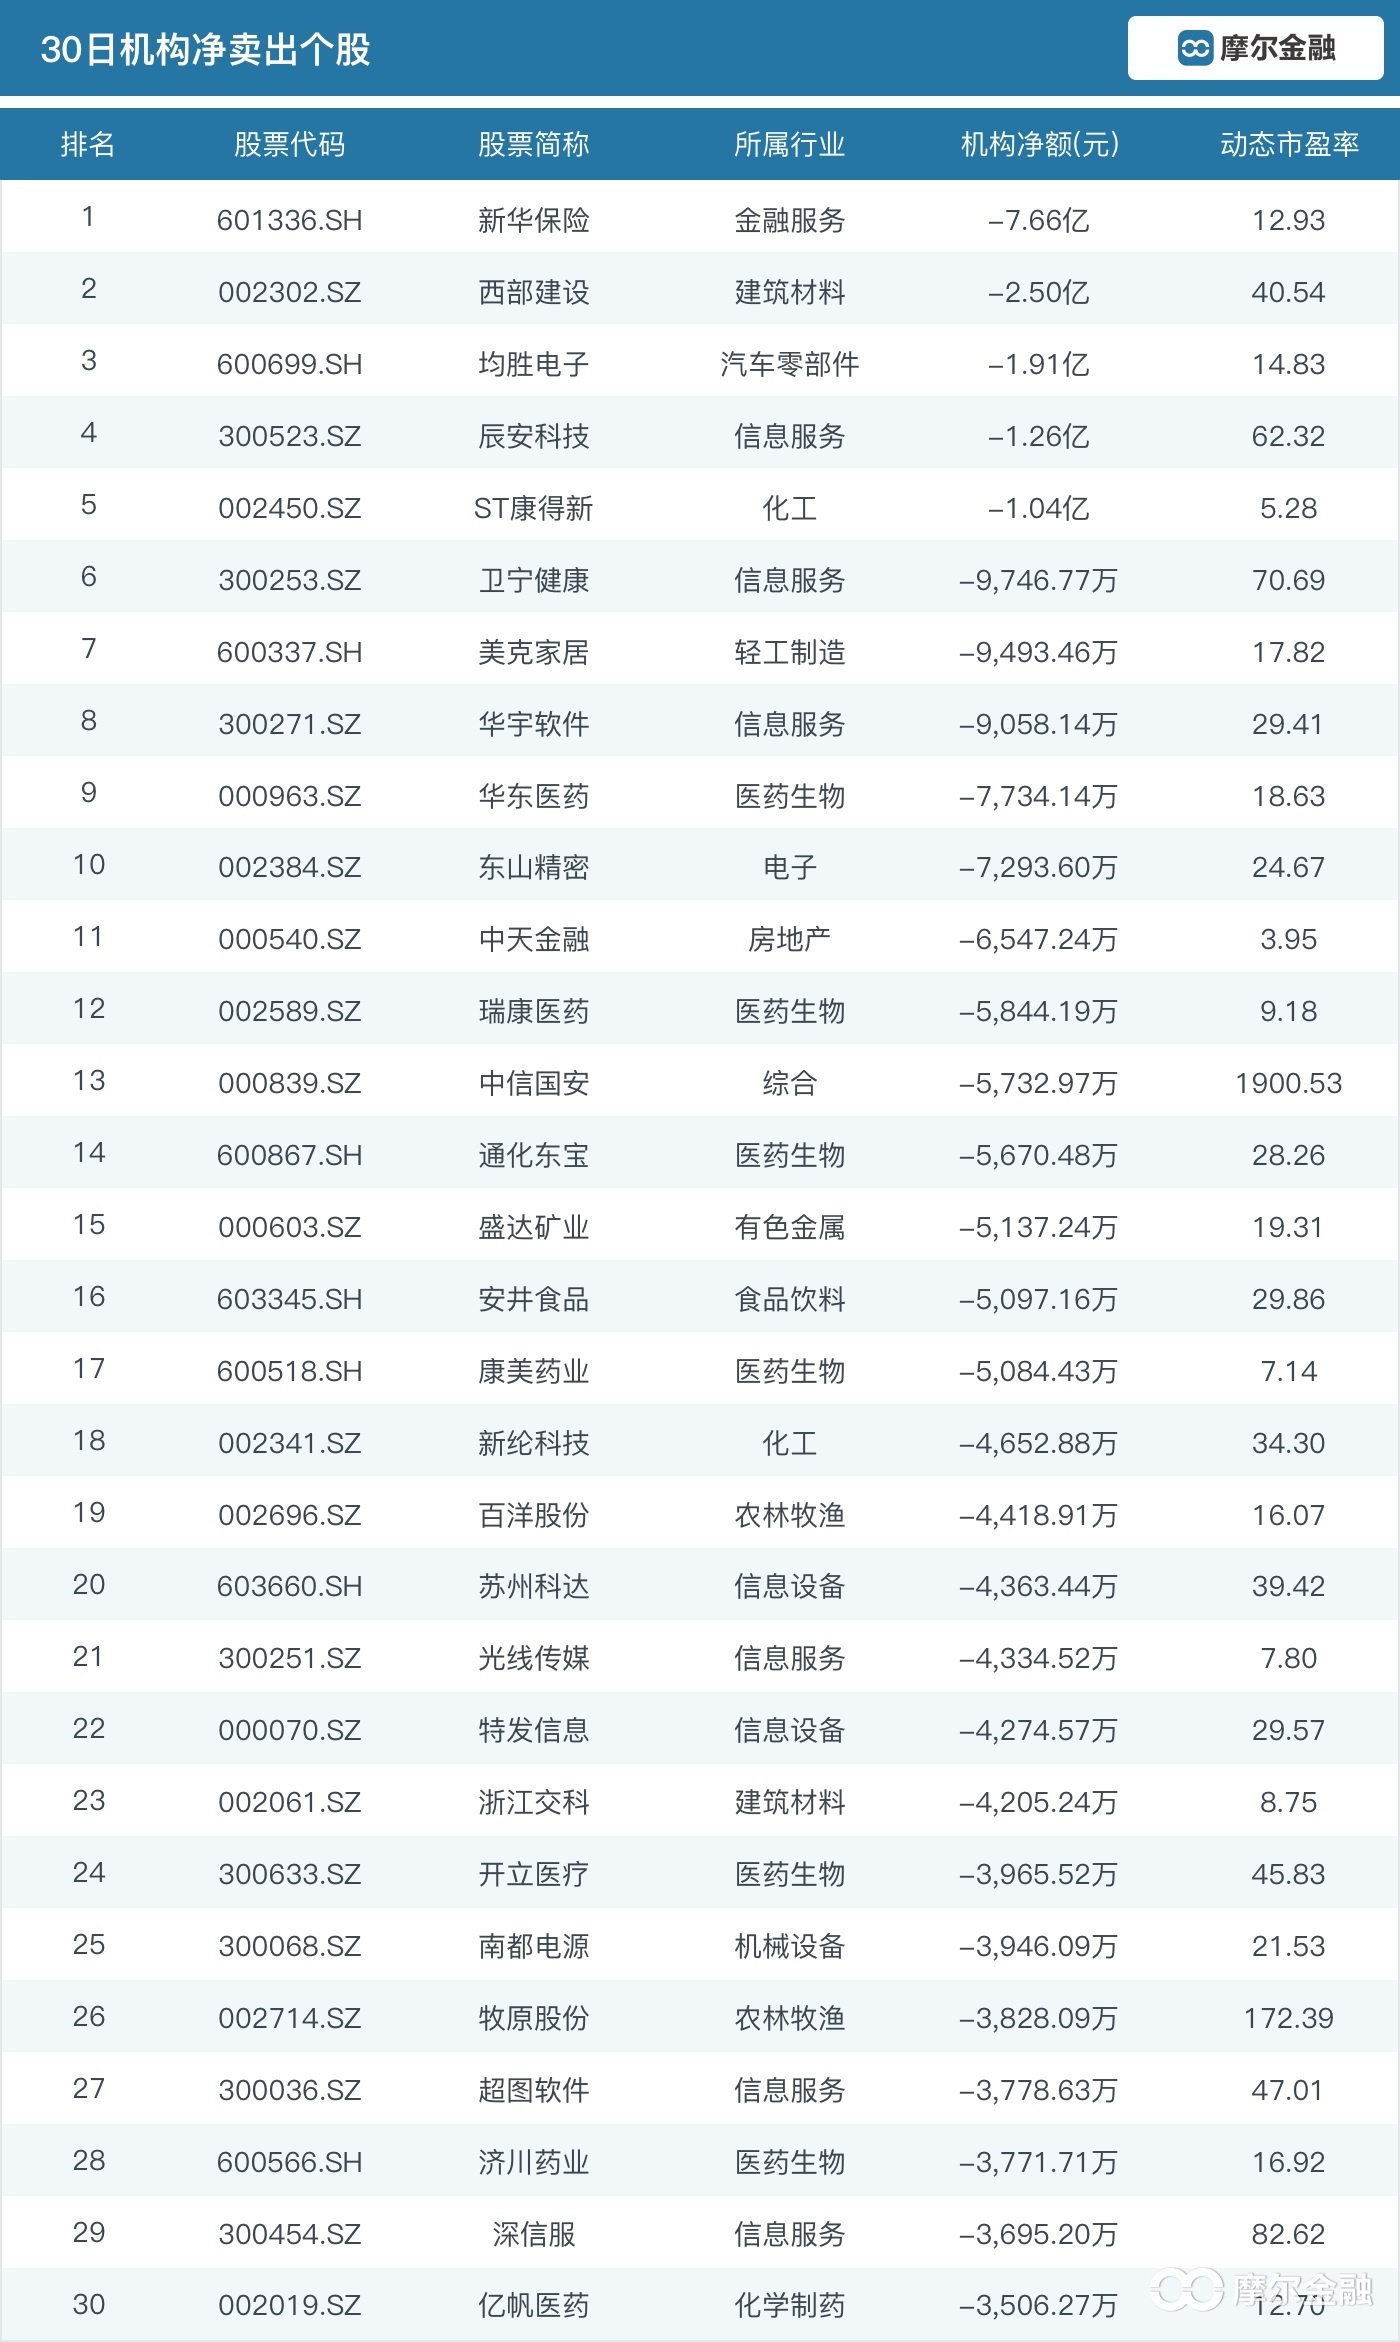 近180家公司遭机构大幅抛售 这些白马股、明星股竟成主要对象 中国金融观察网www.chinaesm.com